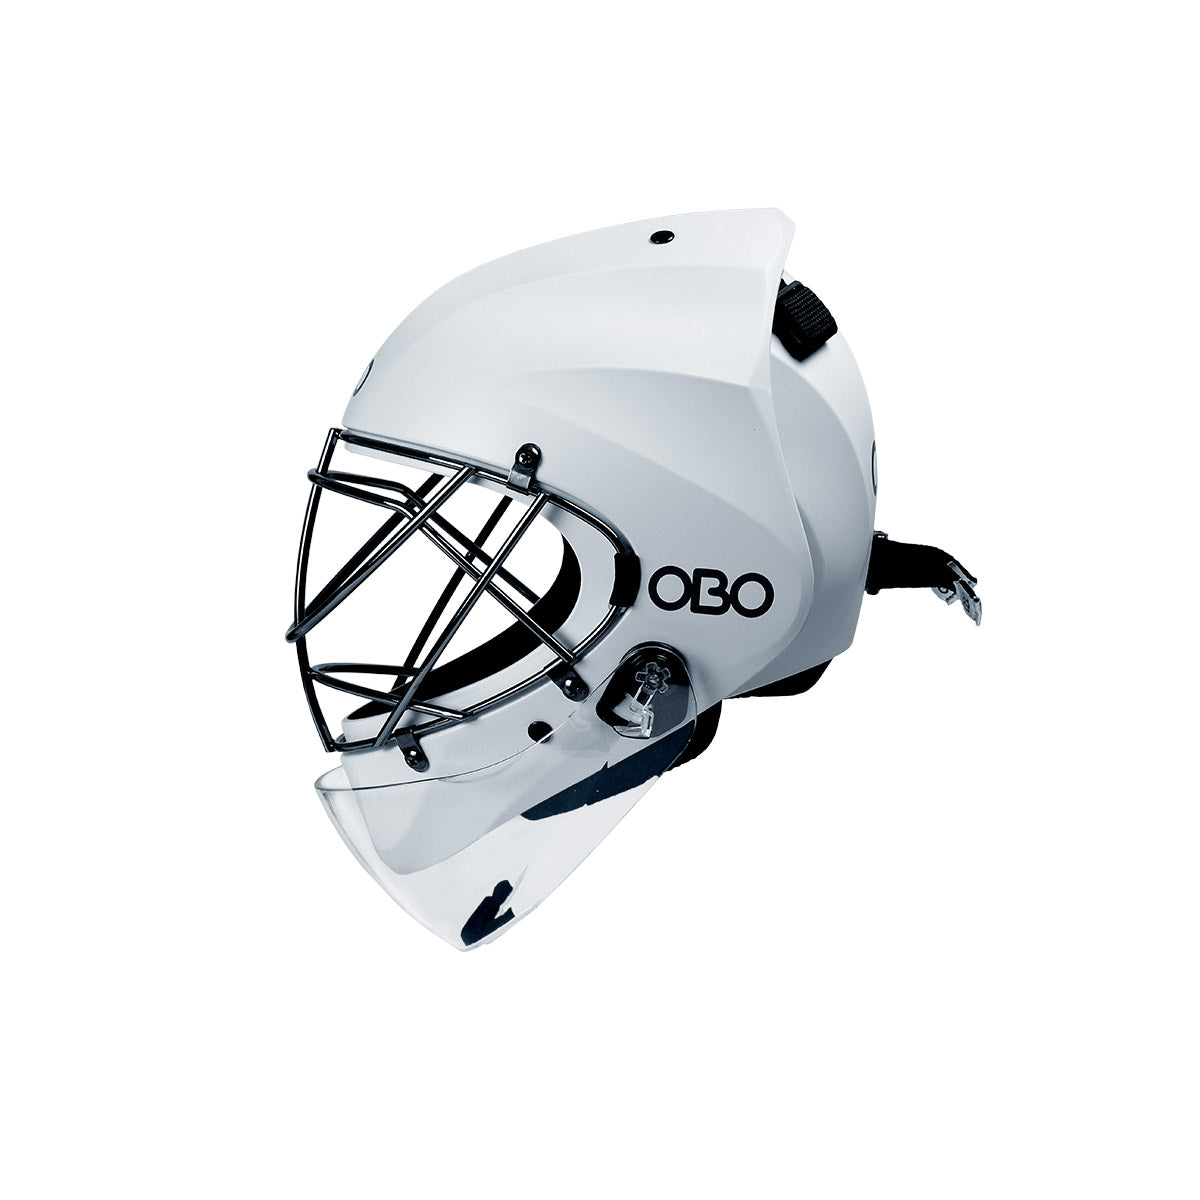 OBO Robo PE Field Hockey Goalie Helmet and Sizes White / Medium | Every Sport for Less